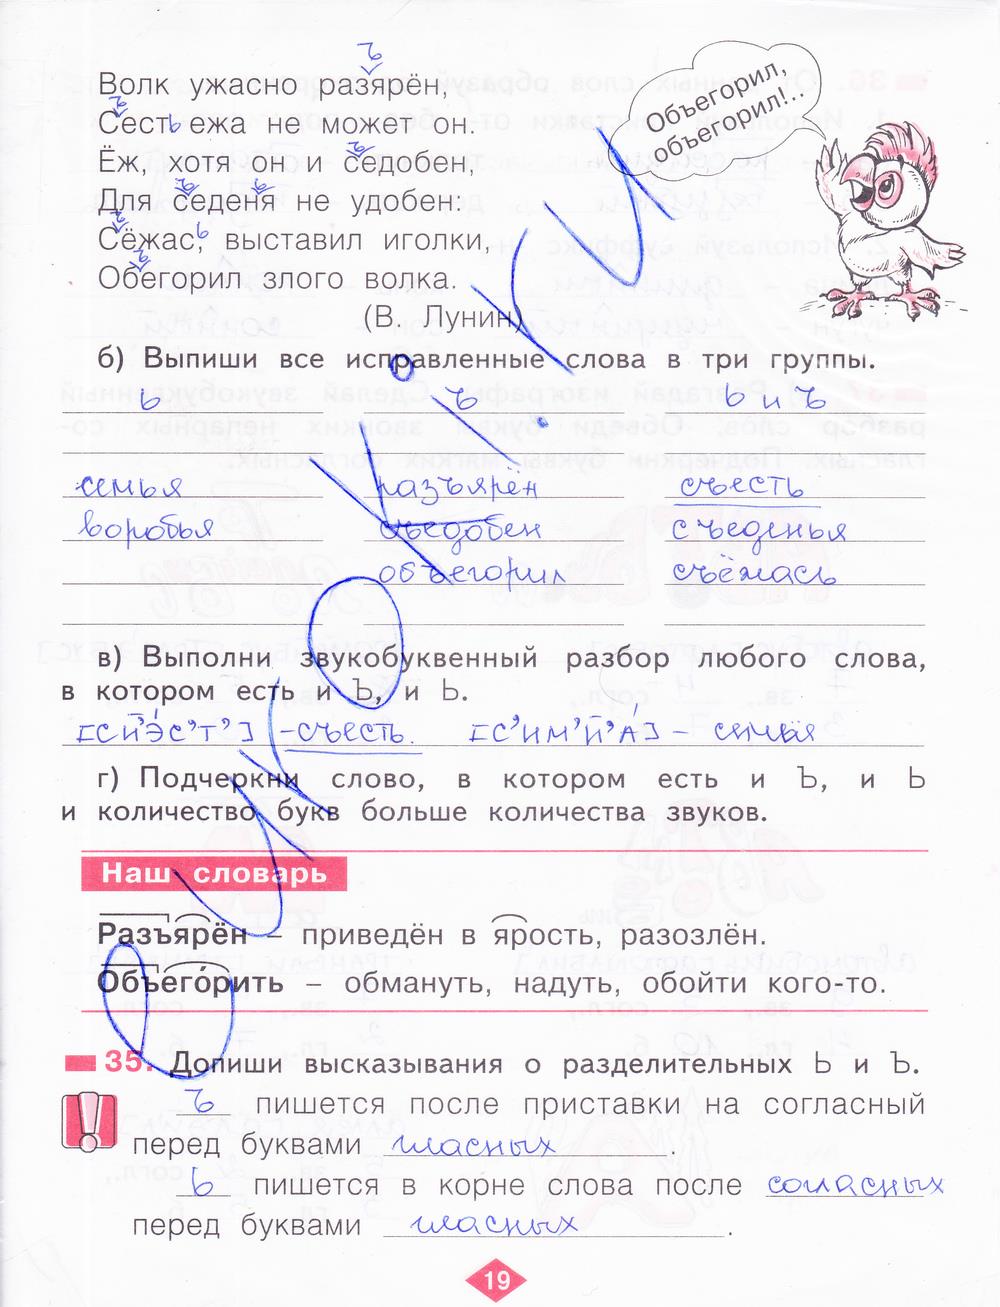 гдз 2 класс рабочая тетрадь часть 2 страница 19 русский язык Яковлева